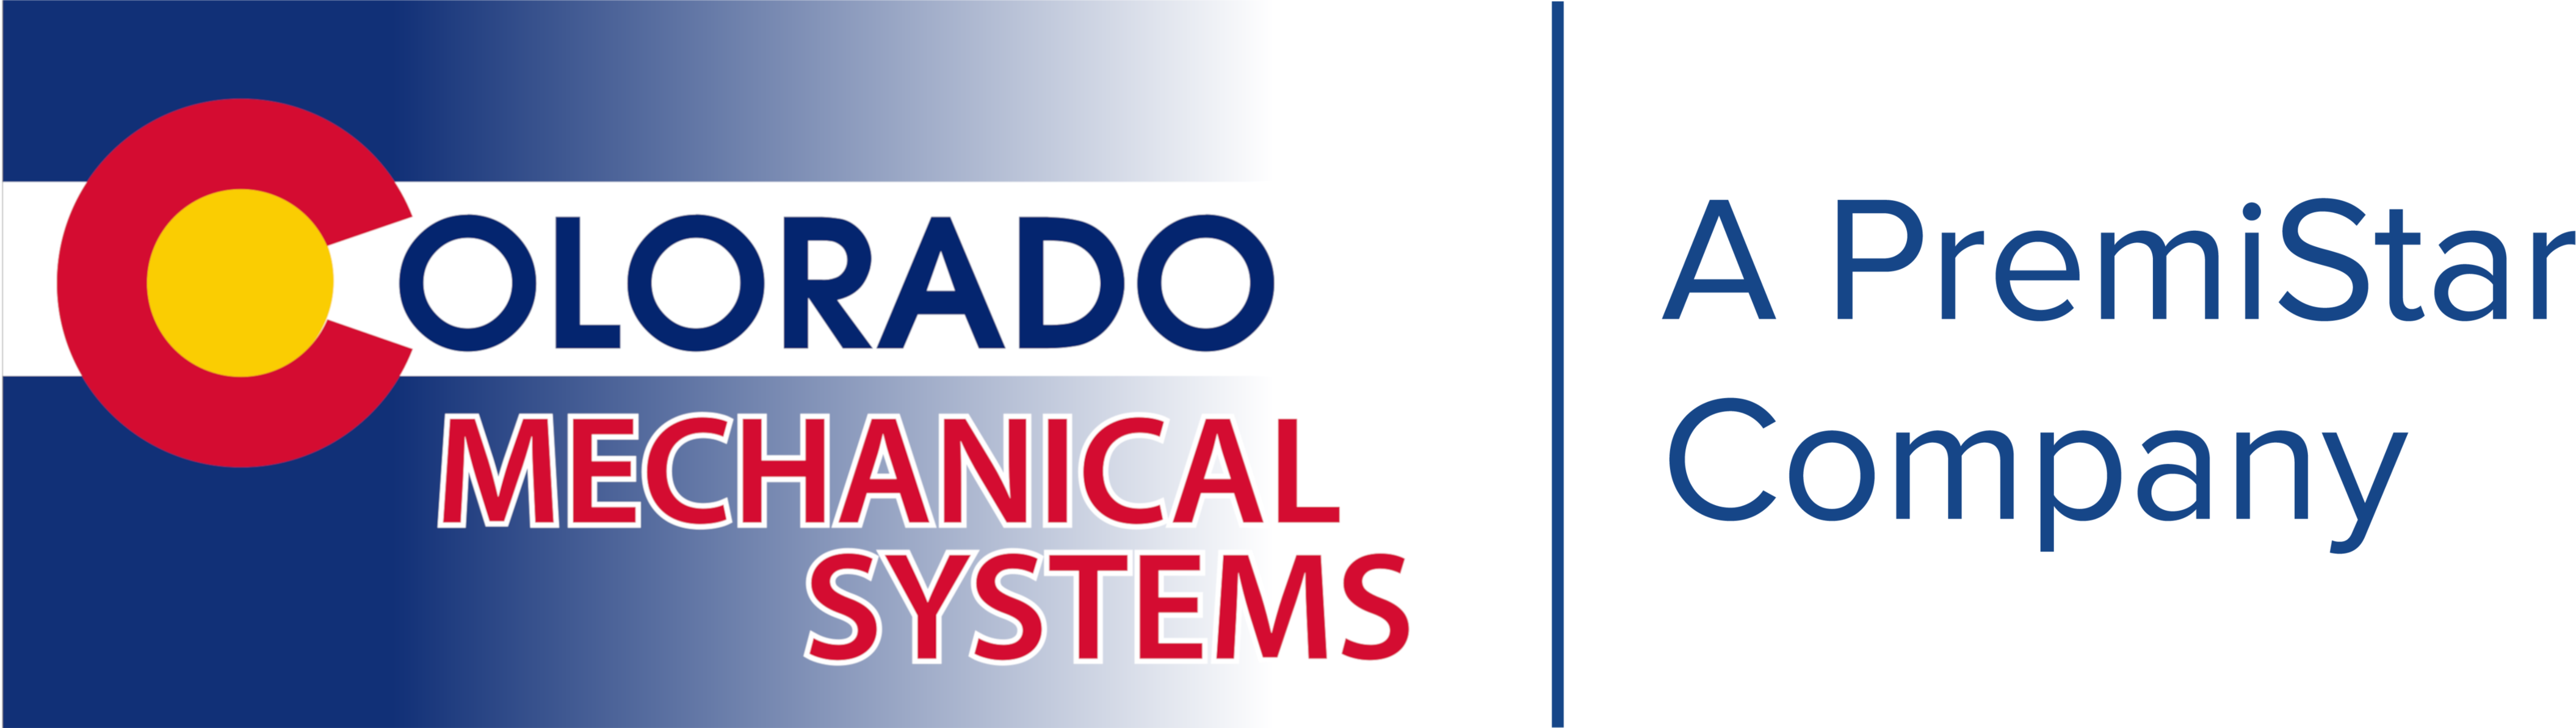 Colorado Mechanical Systems